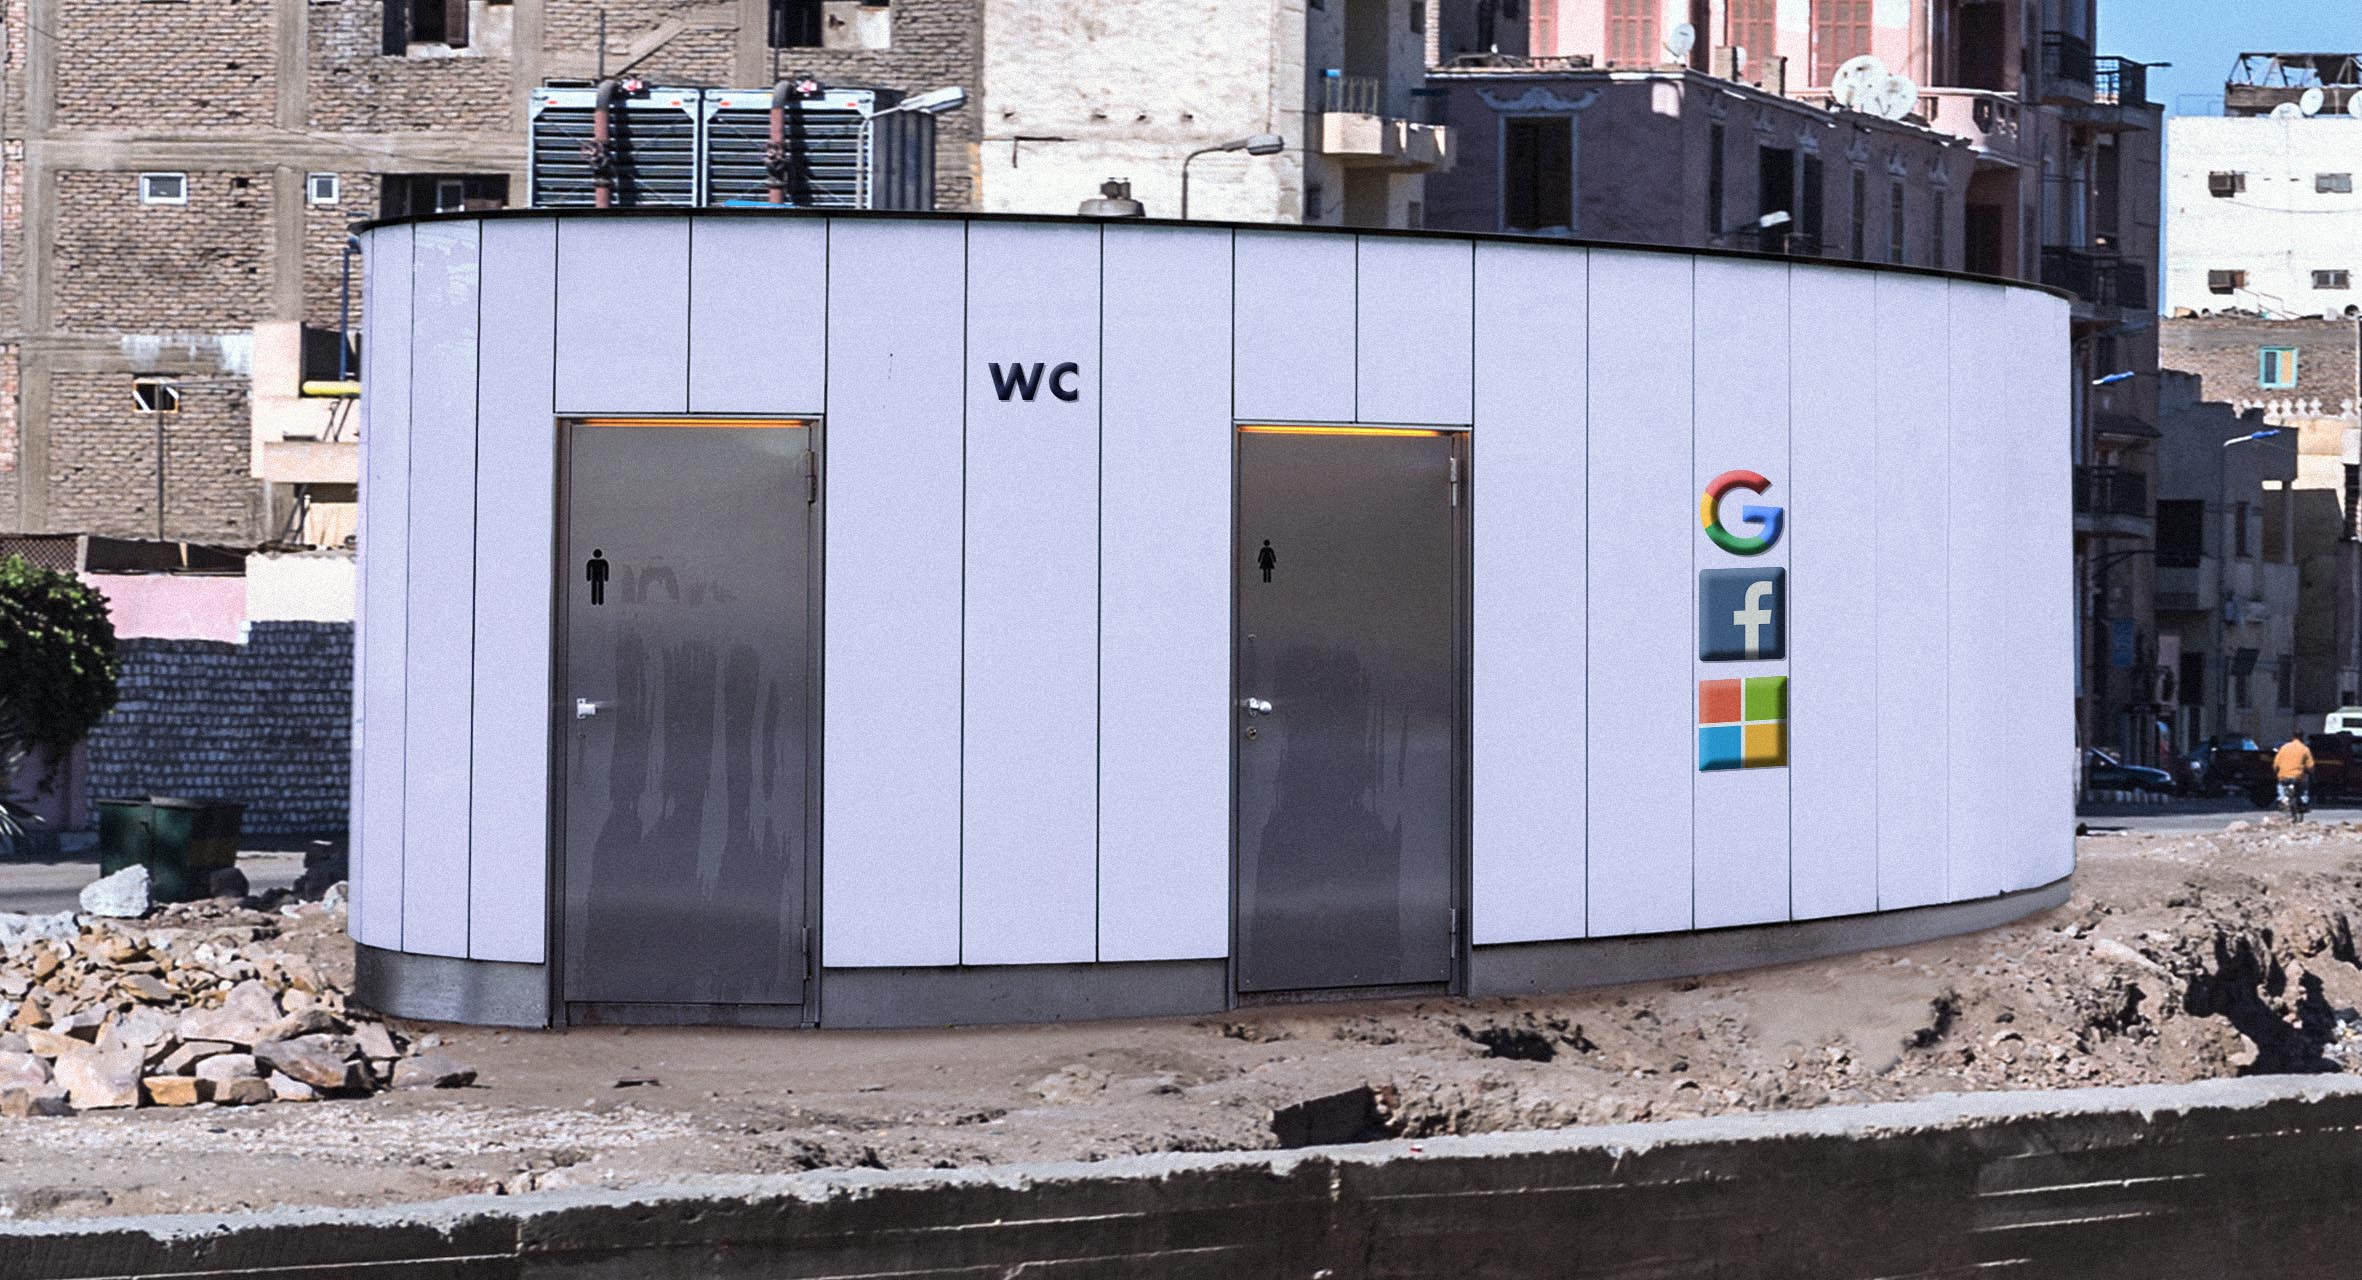 صورة فيسبوك وغوغل ومايكروسوفت يشتركون ببناء مراحيض عامة في الدول النامية تعويضاً عن الضرائب